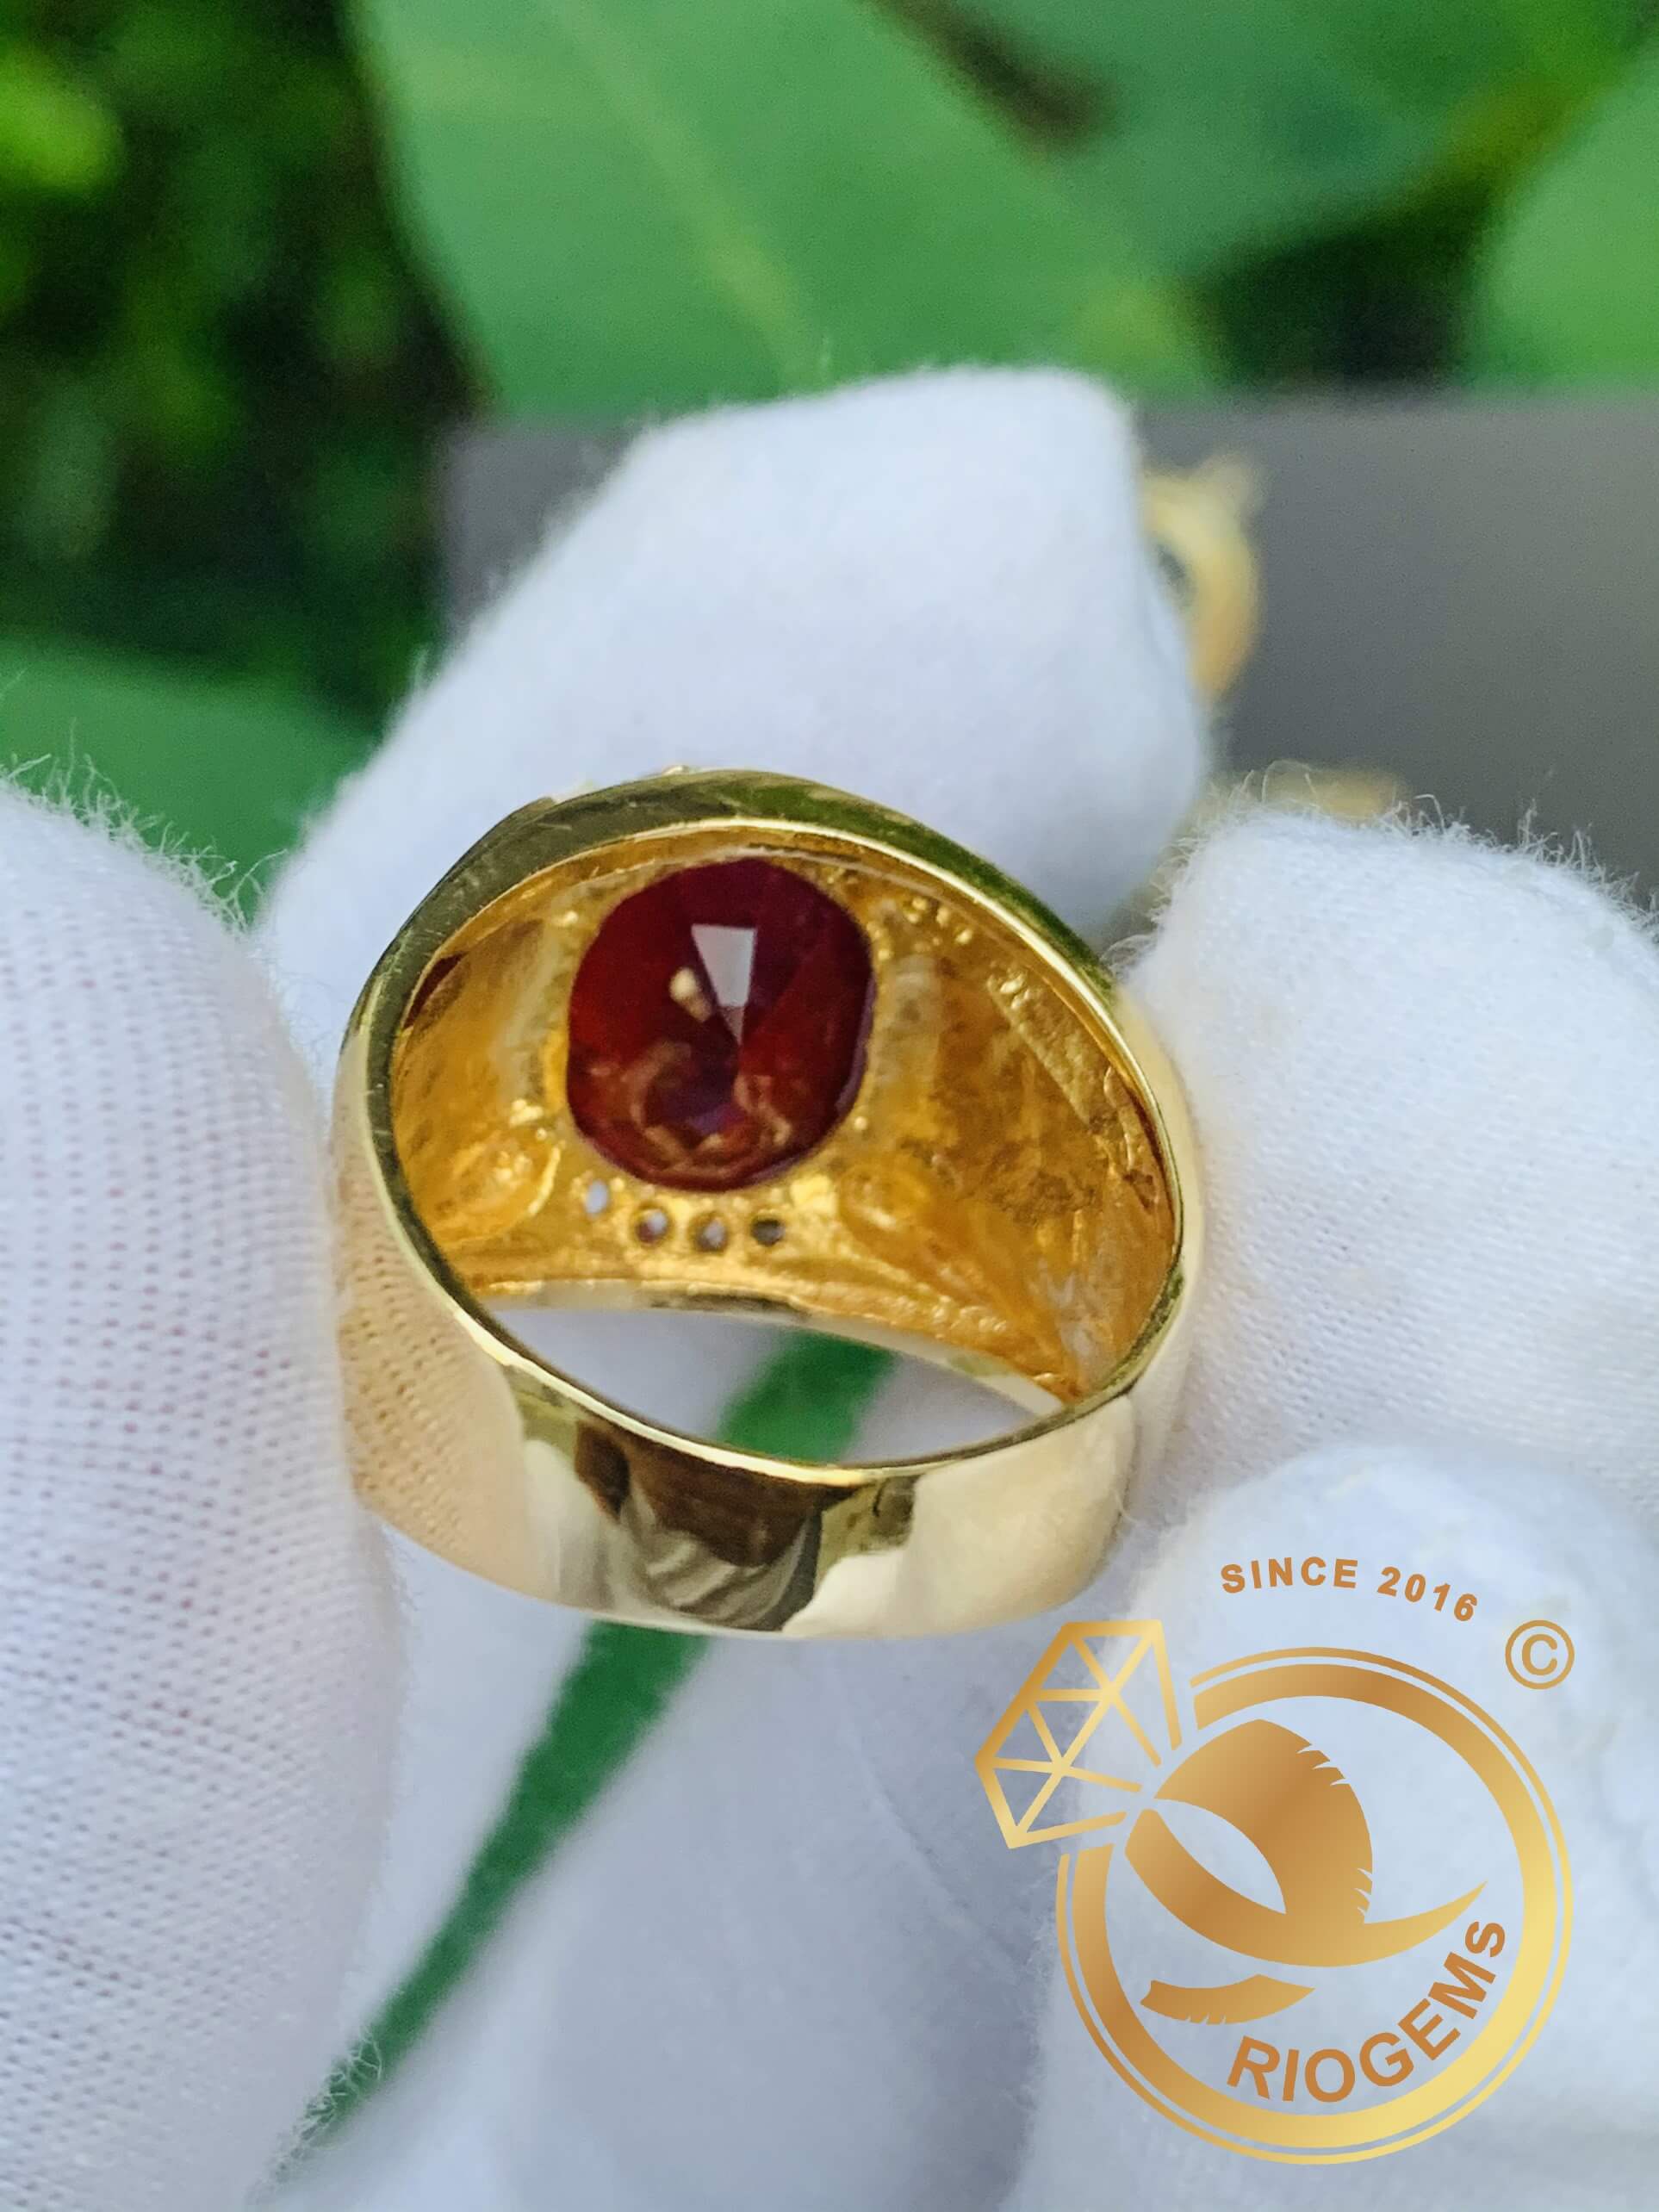 Nhẫn chữ LỘC vàng đính Ruby cắt giác Kim Cương được chế tác từ vàng 18K cao cấp kết hợp với đá Ruby cắt giác kim cương đính trên mặt nhẫn